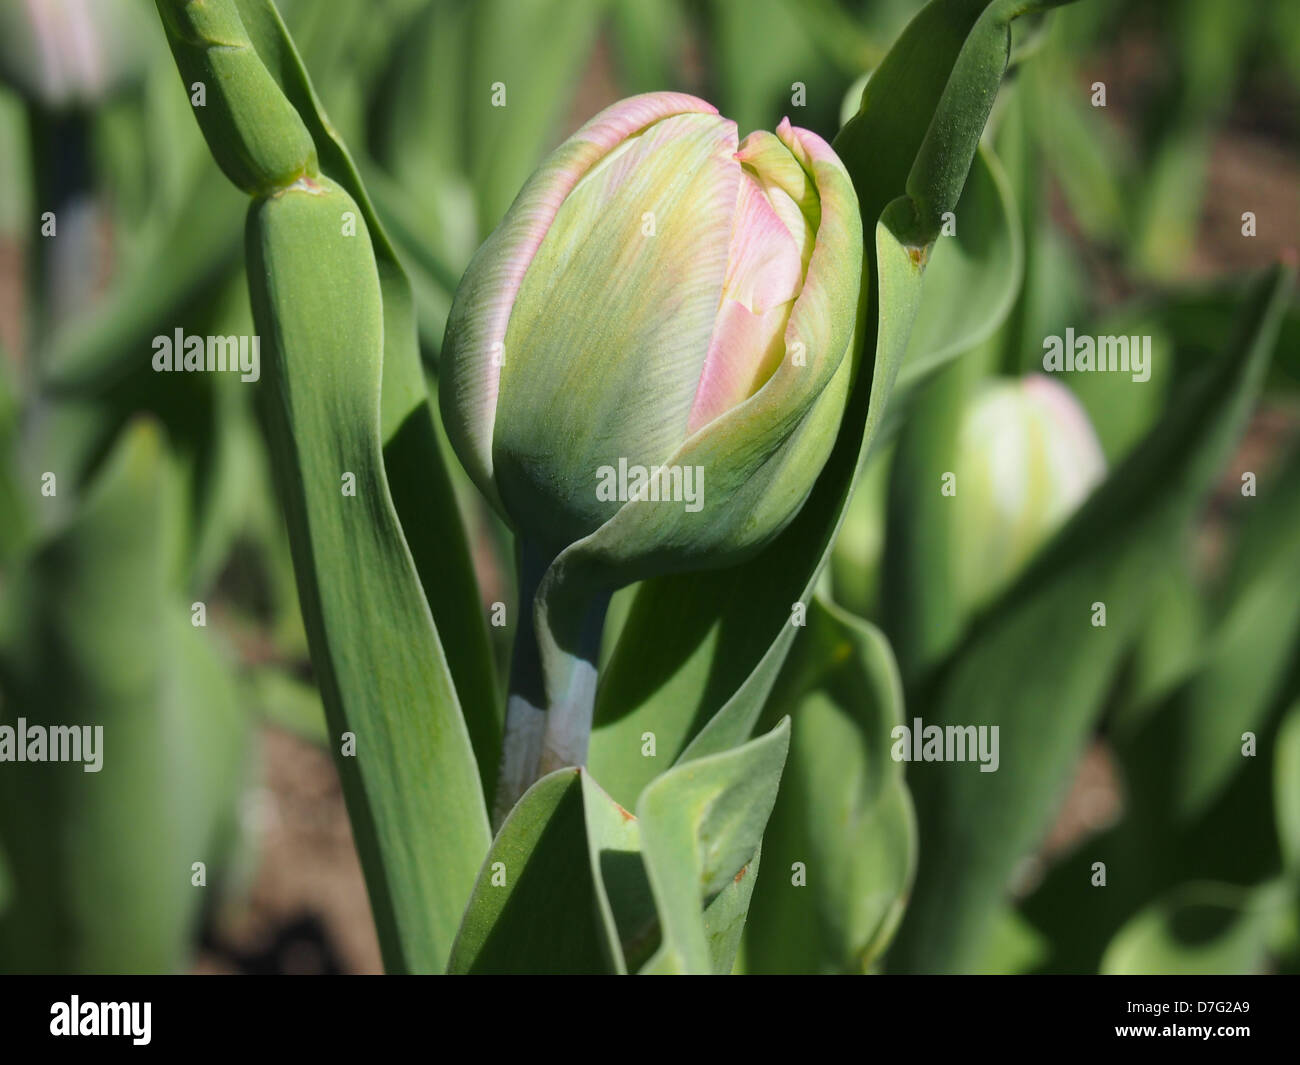 Young tulip unopened in garden Stock Photo